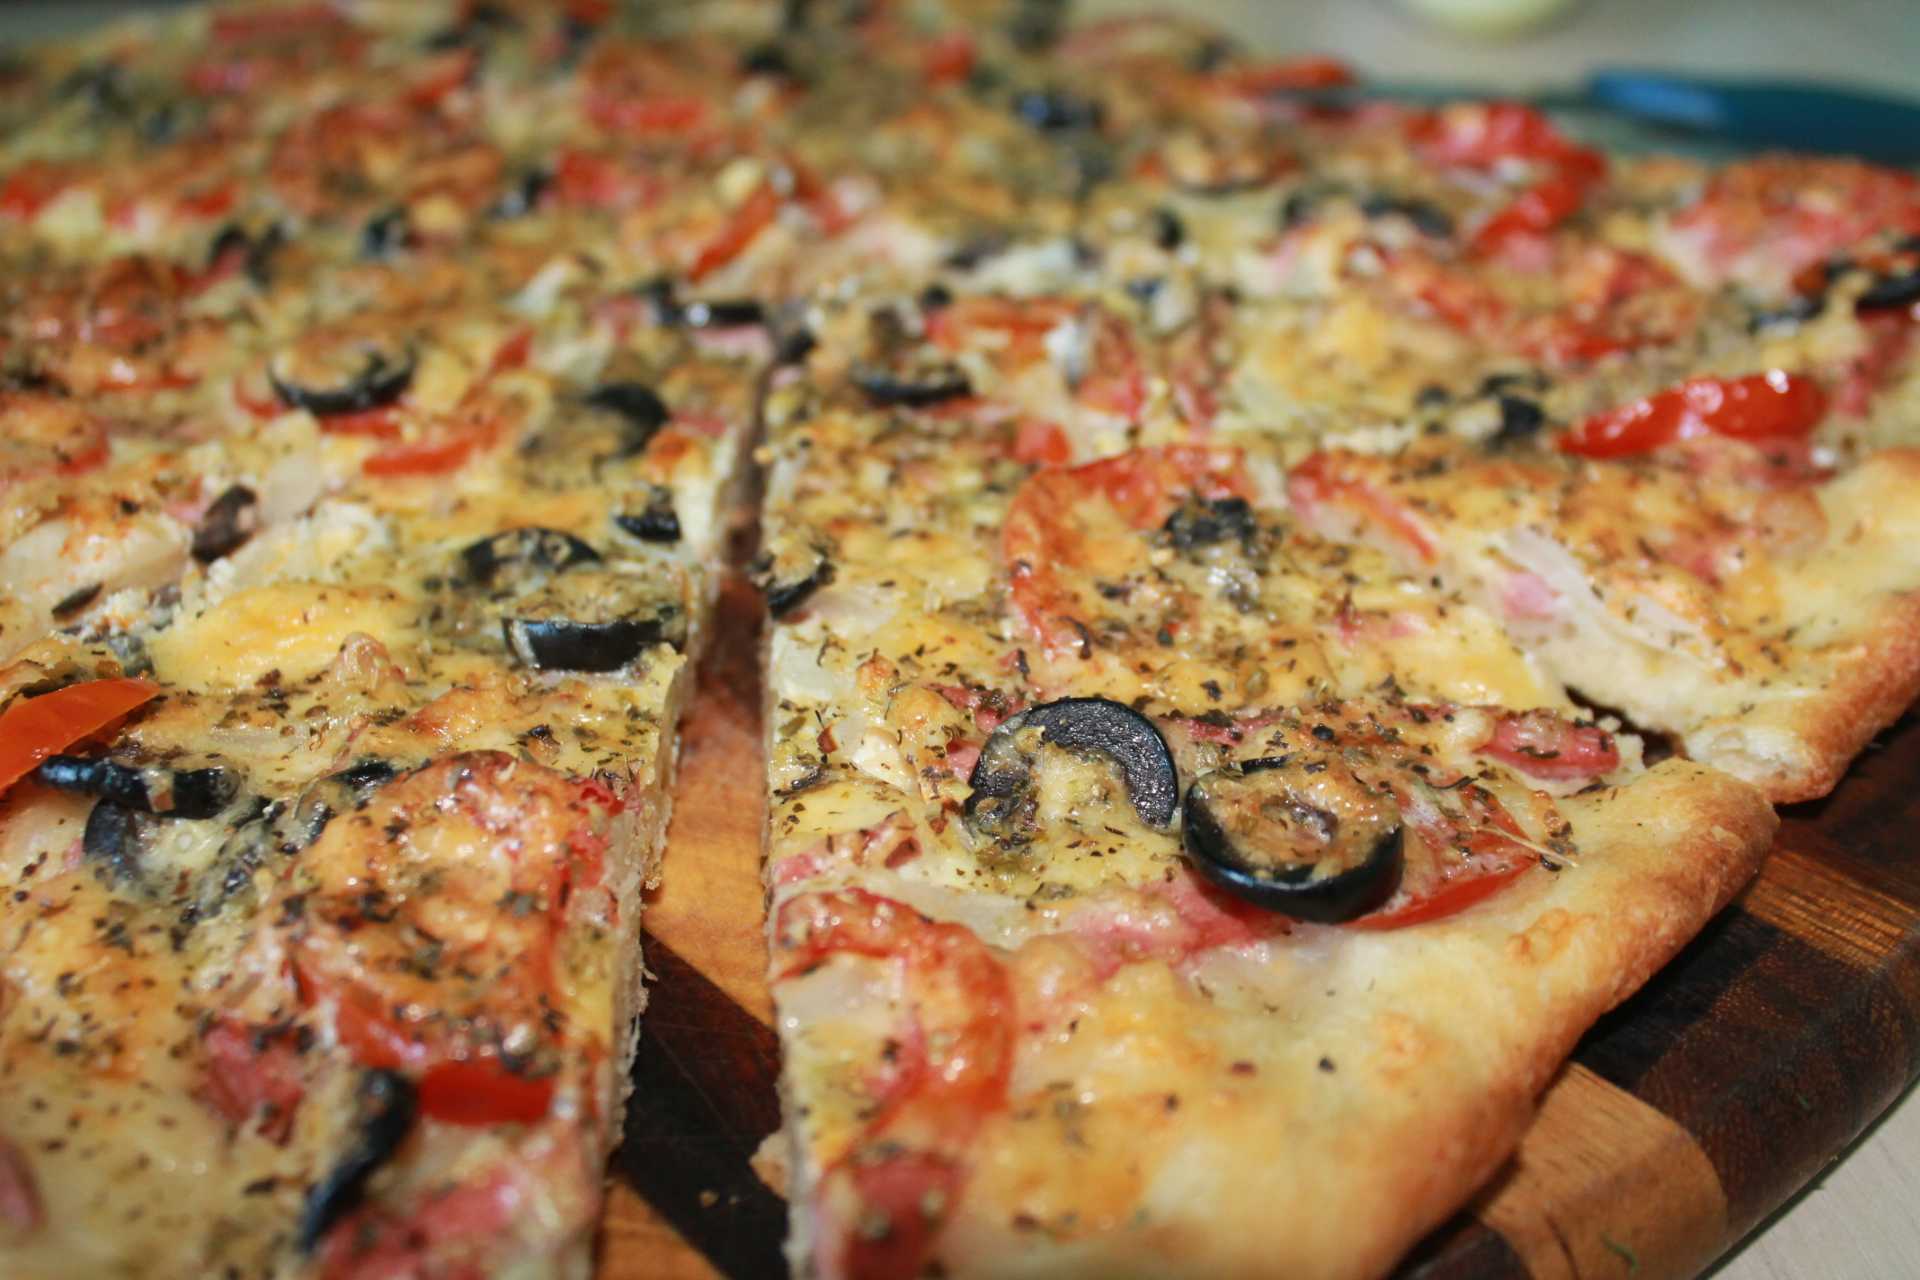 Пица или пицца рецепт с фото в домашних условиях в духовке рецепт